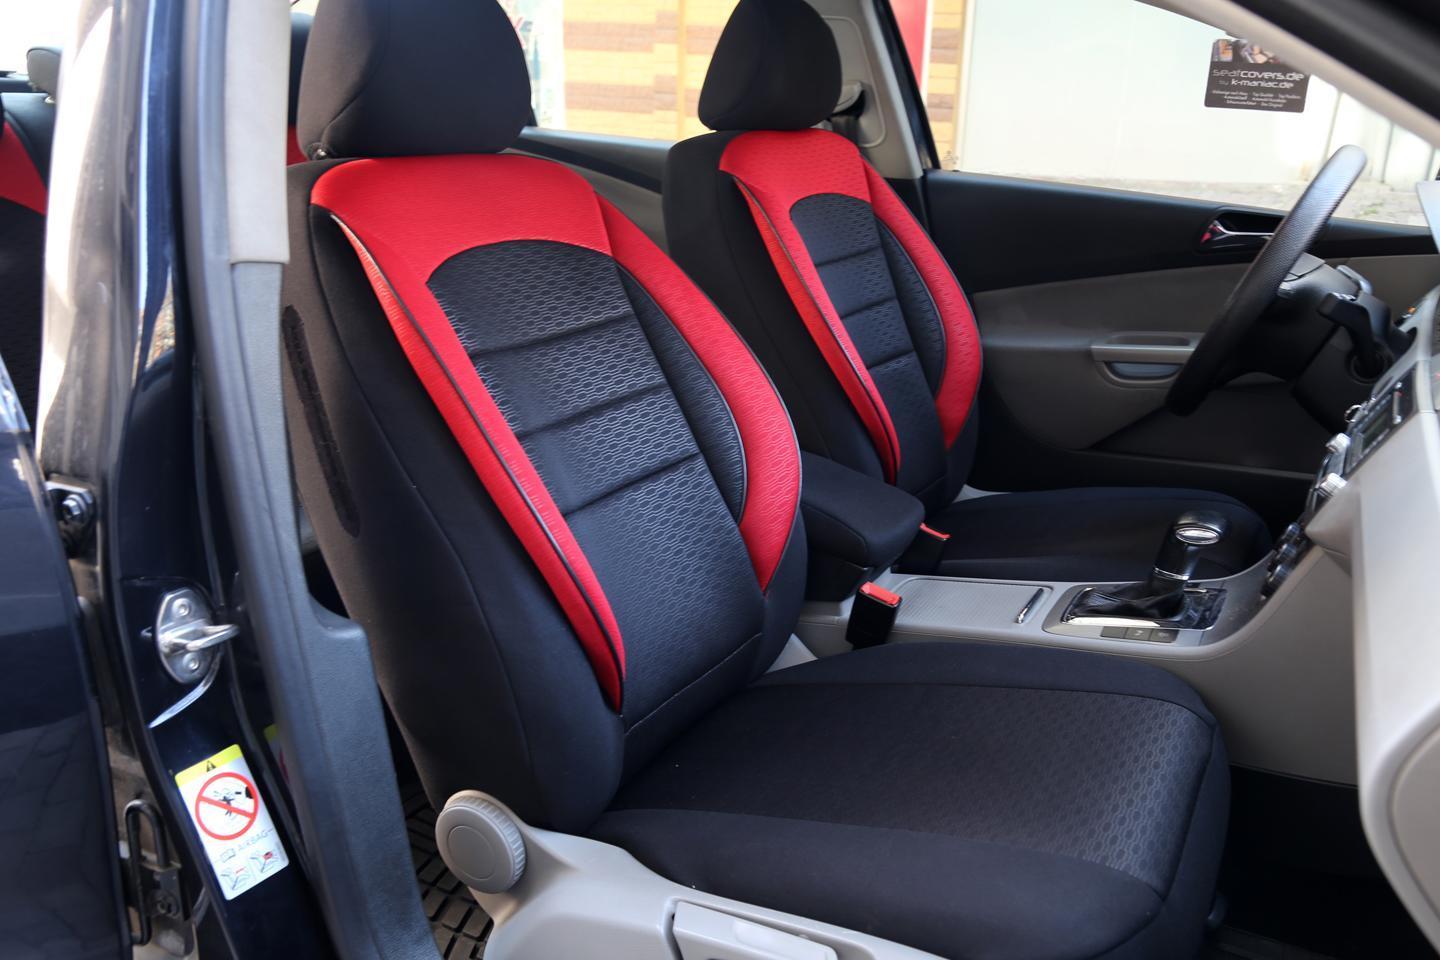 Car Seat Covers Protectors Audi A1 Sportback 8x Black Red No25 Complete - Audi A1 Sportback Car Seat Covers